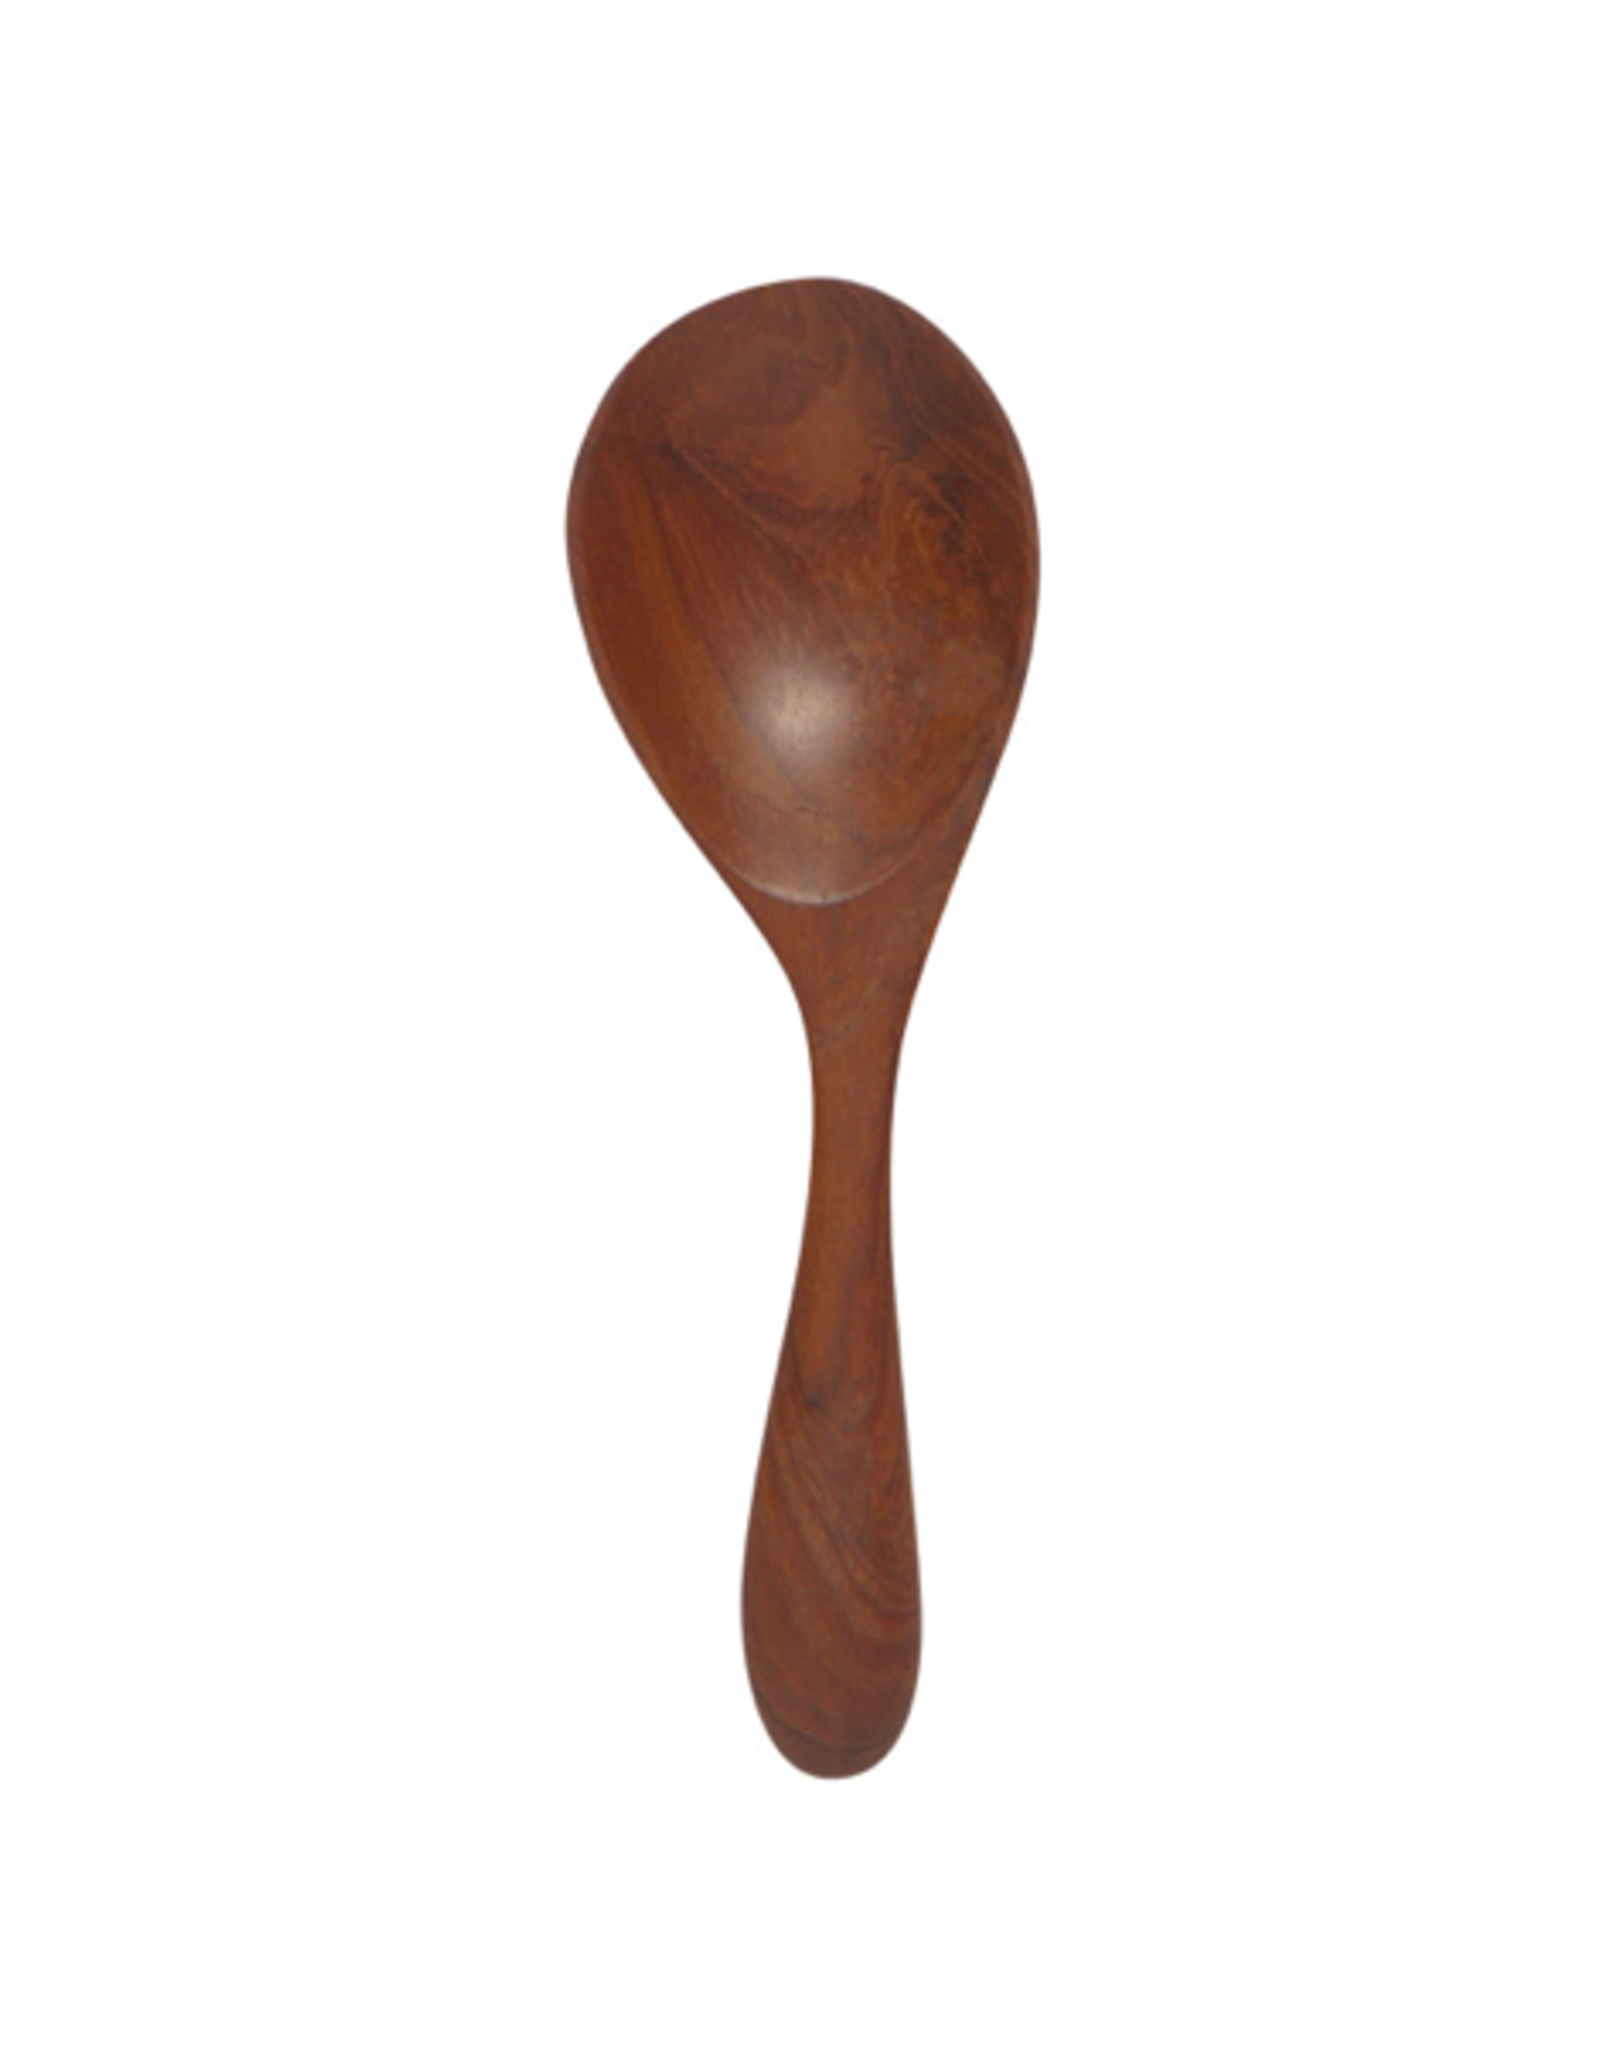 DCA - Little Spoon / Teak Wood, 4.25"